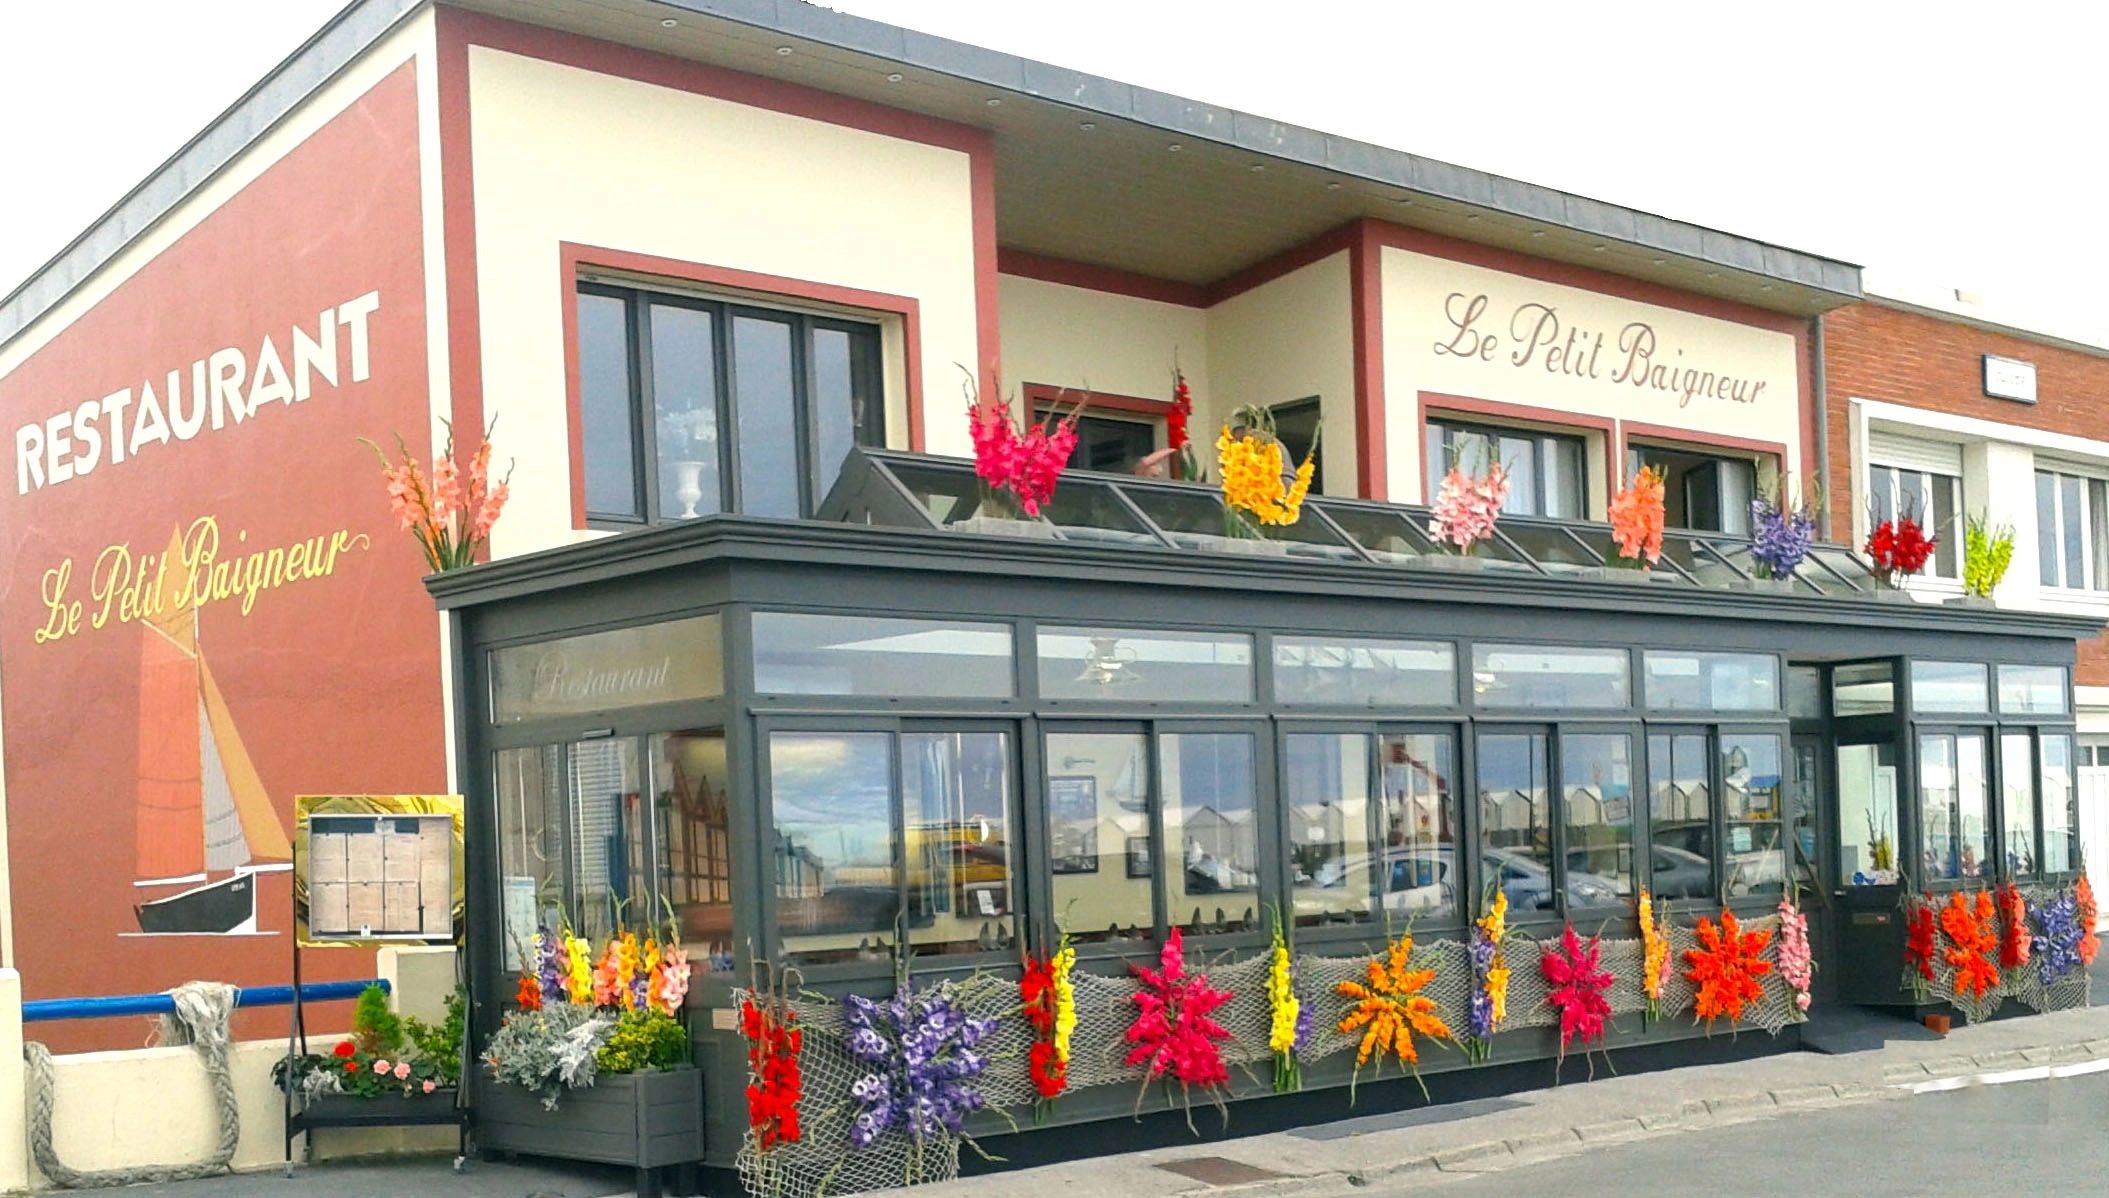 Le Petit Baigneur : restaurant situé en Baie de Somme à Cayeux sur mer